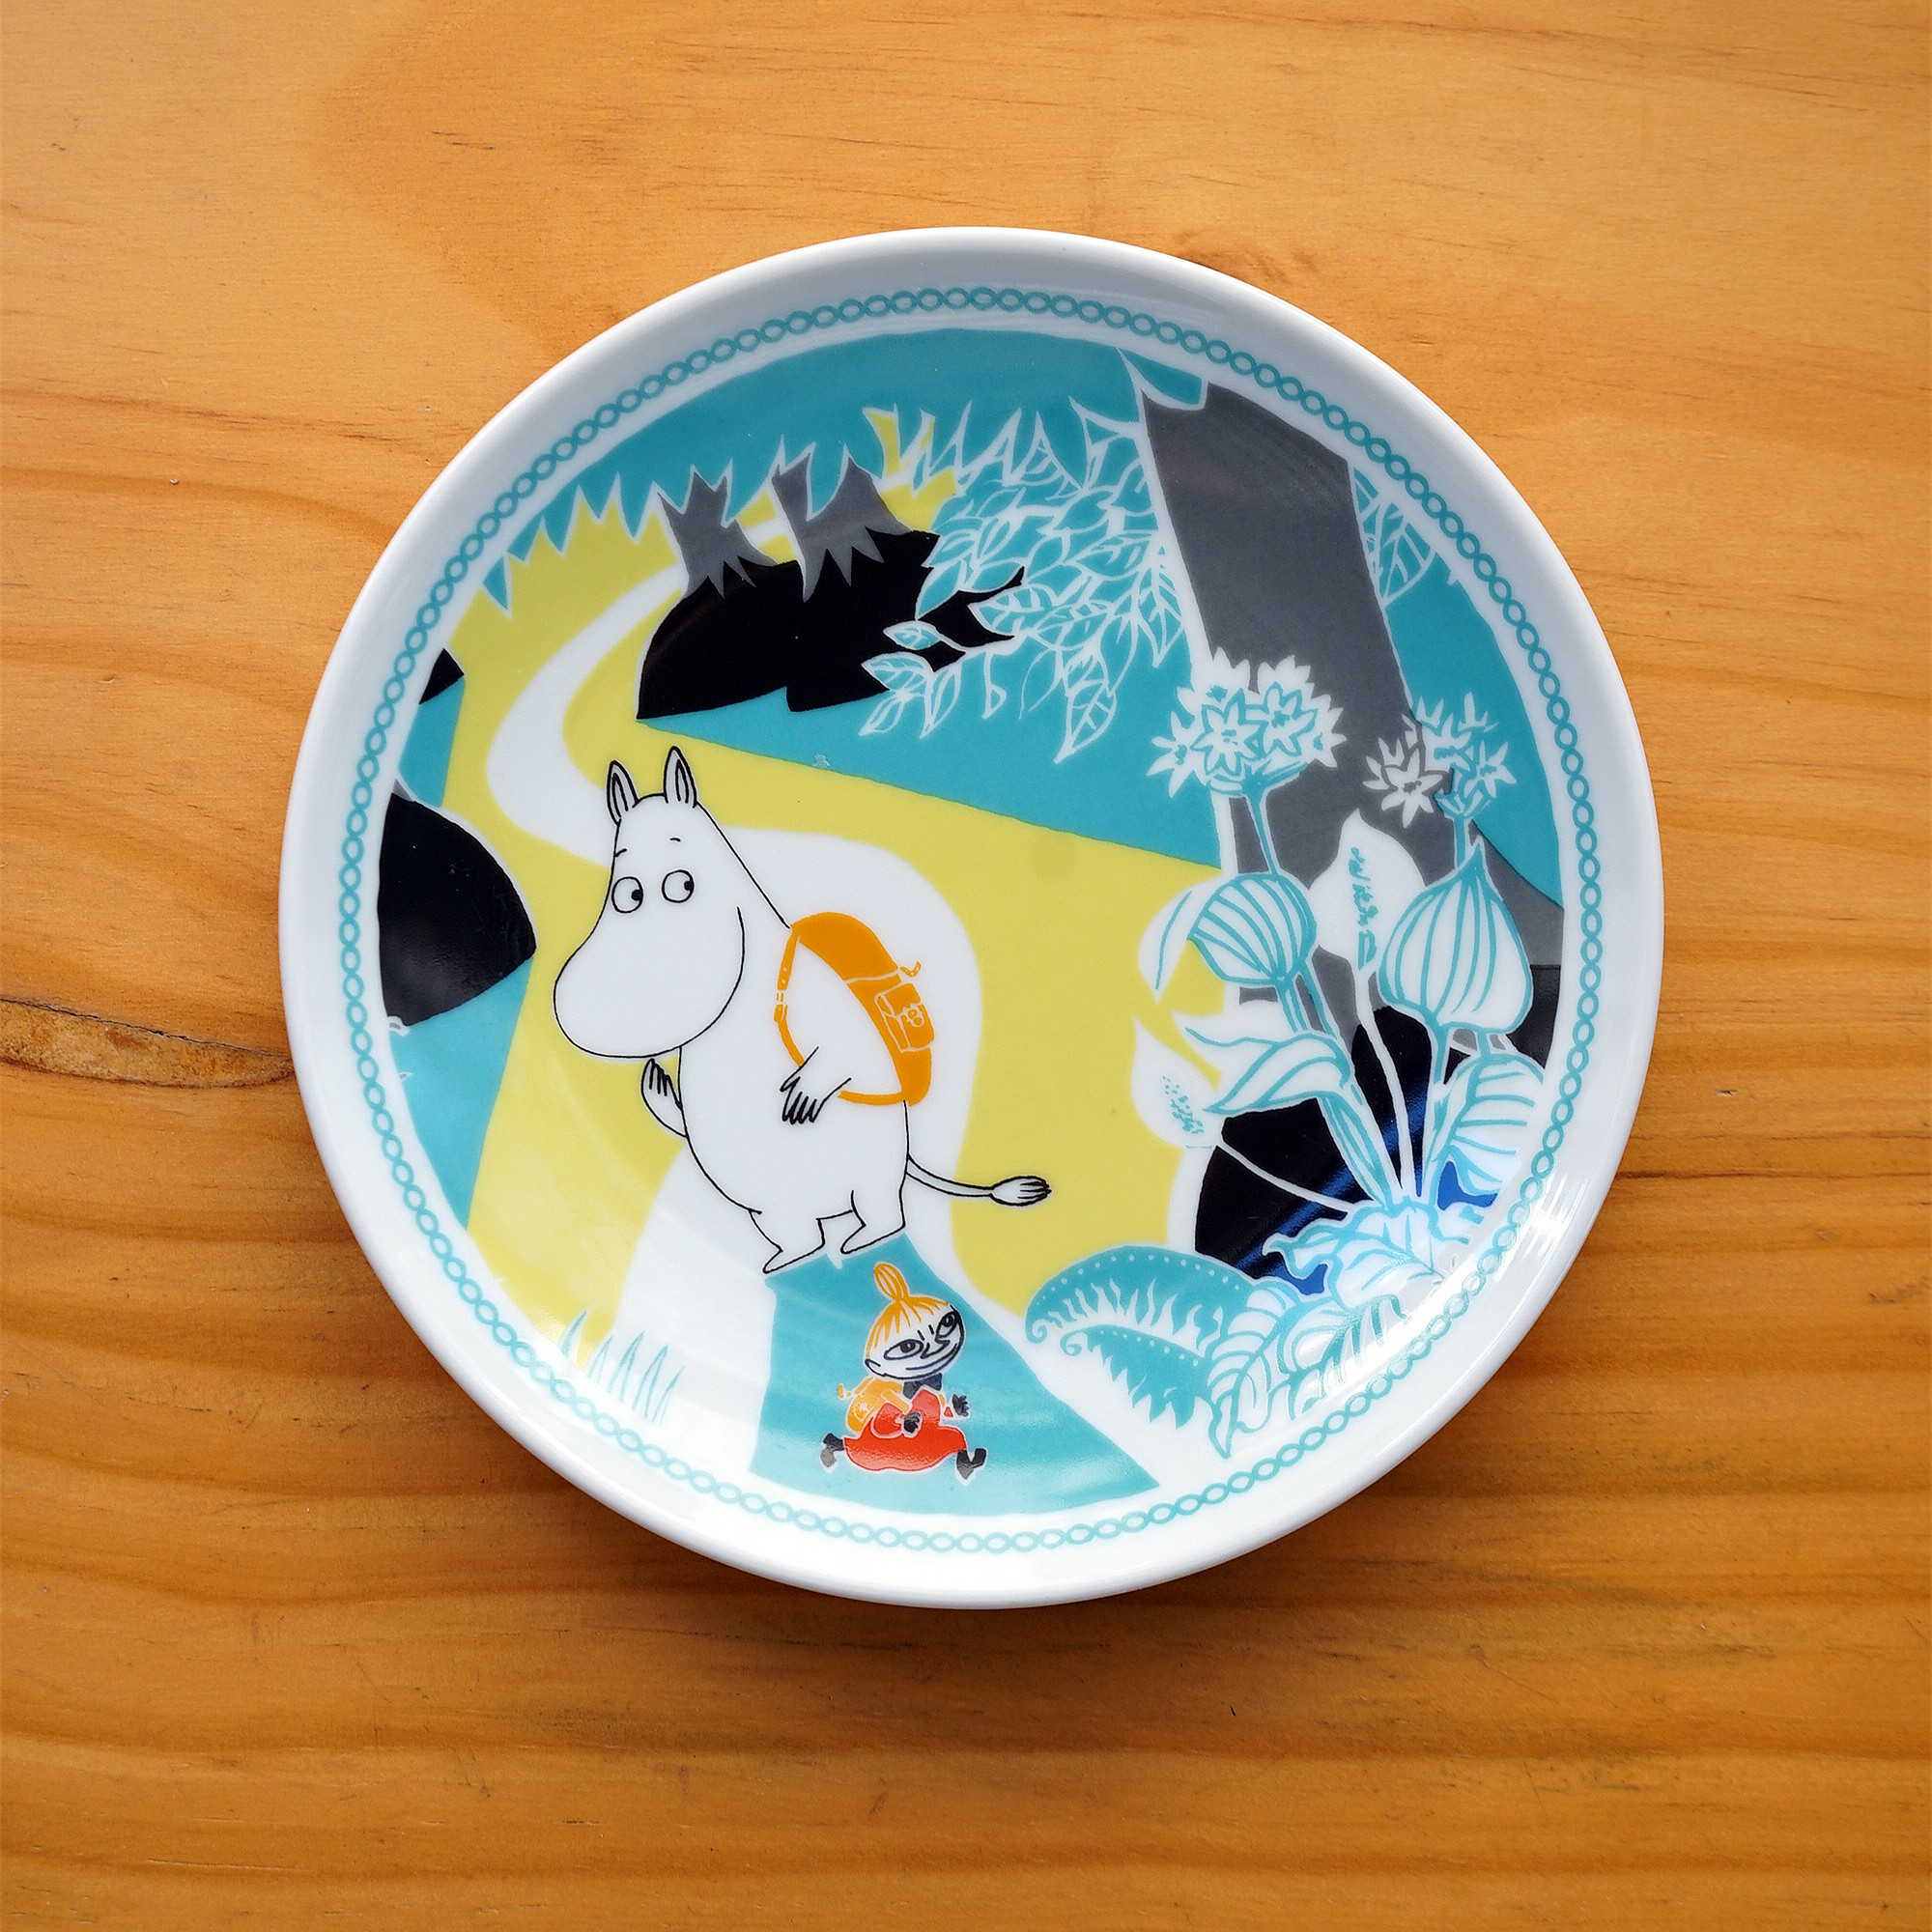 一屋FUNNY 姆明与亚美 釉下彩陶瓷餐盘 可爱卡通甜品小圆盘